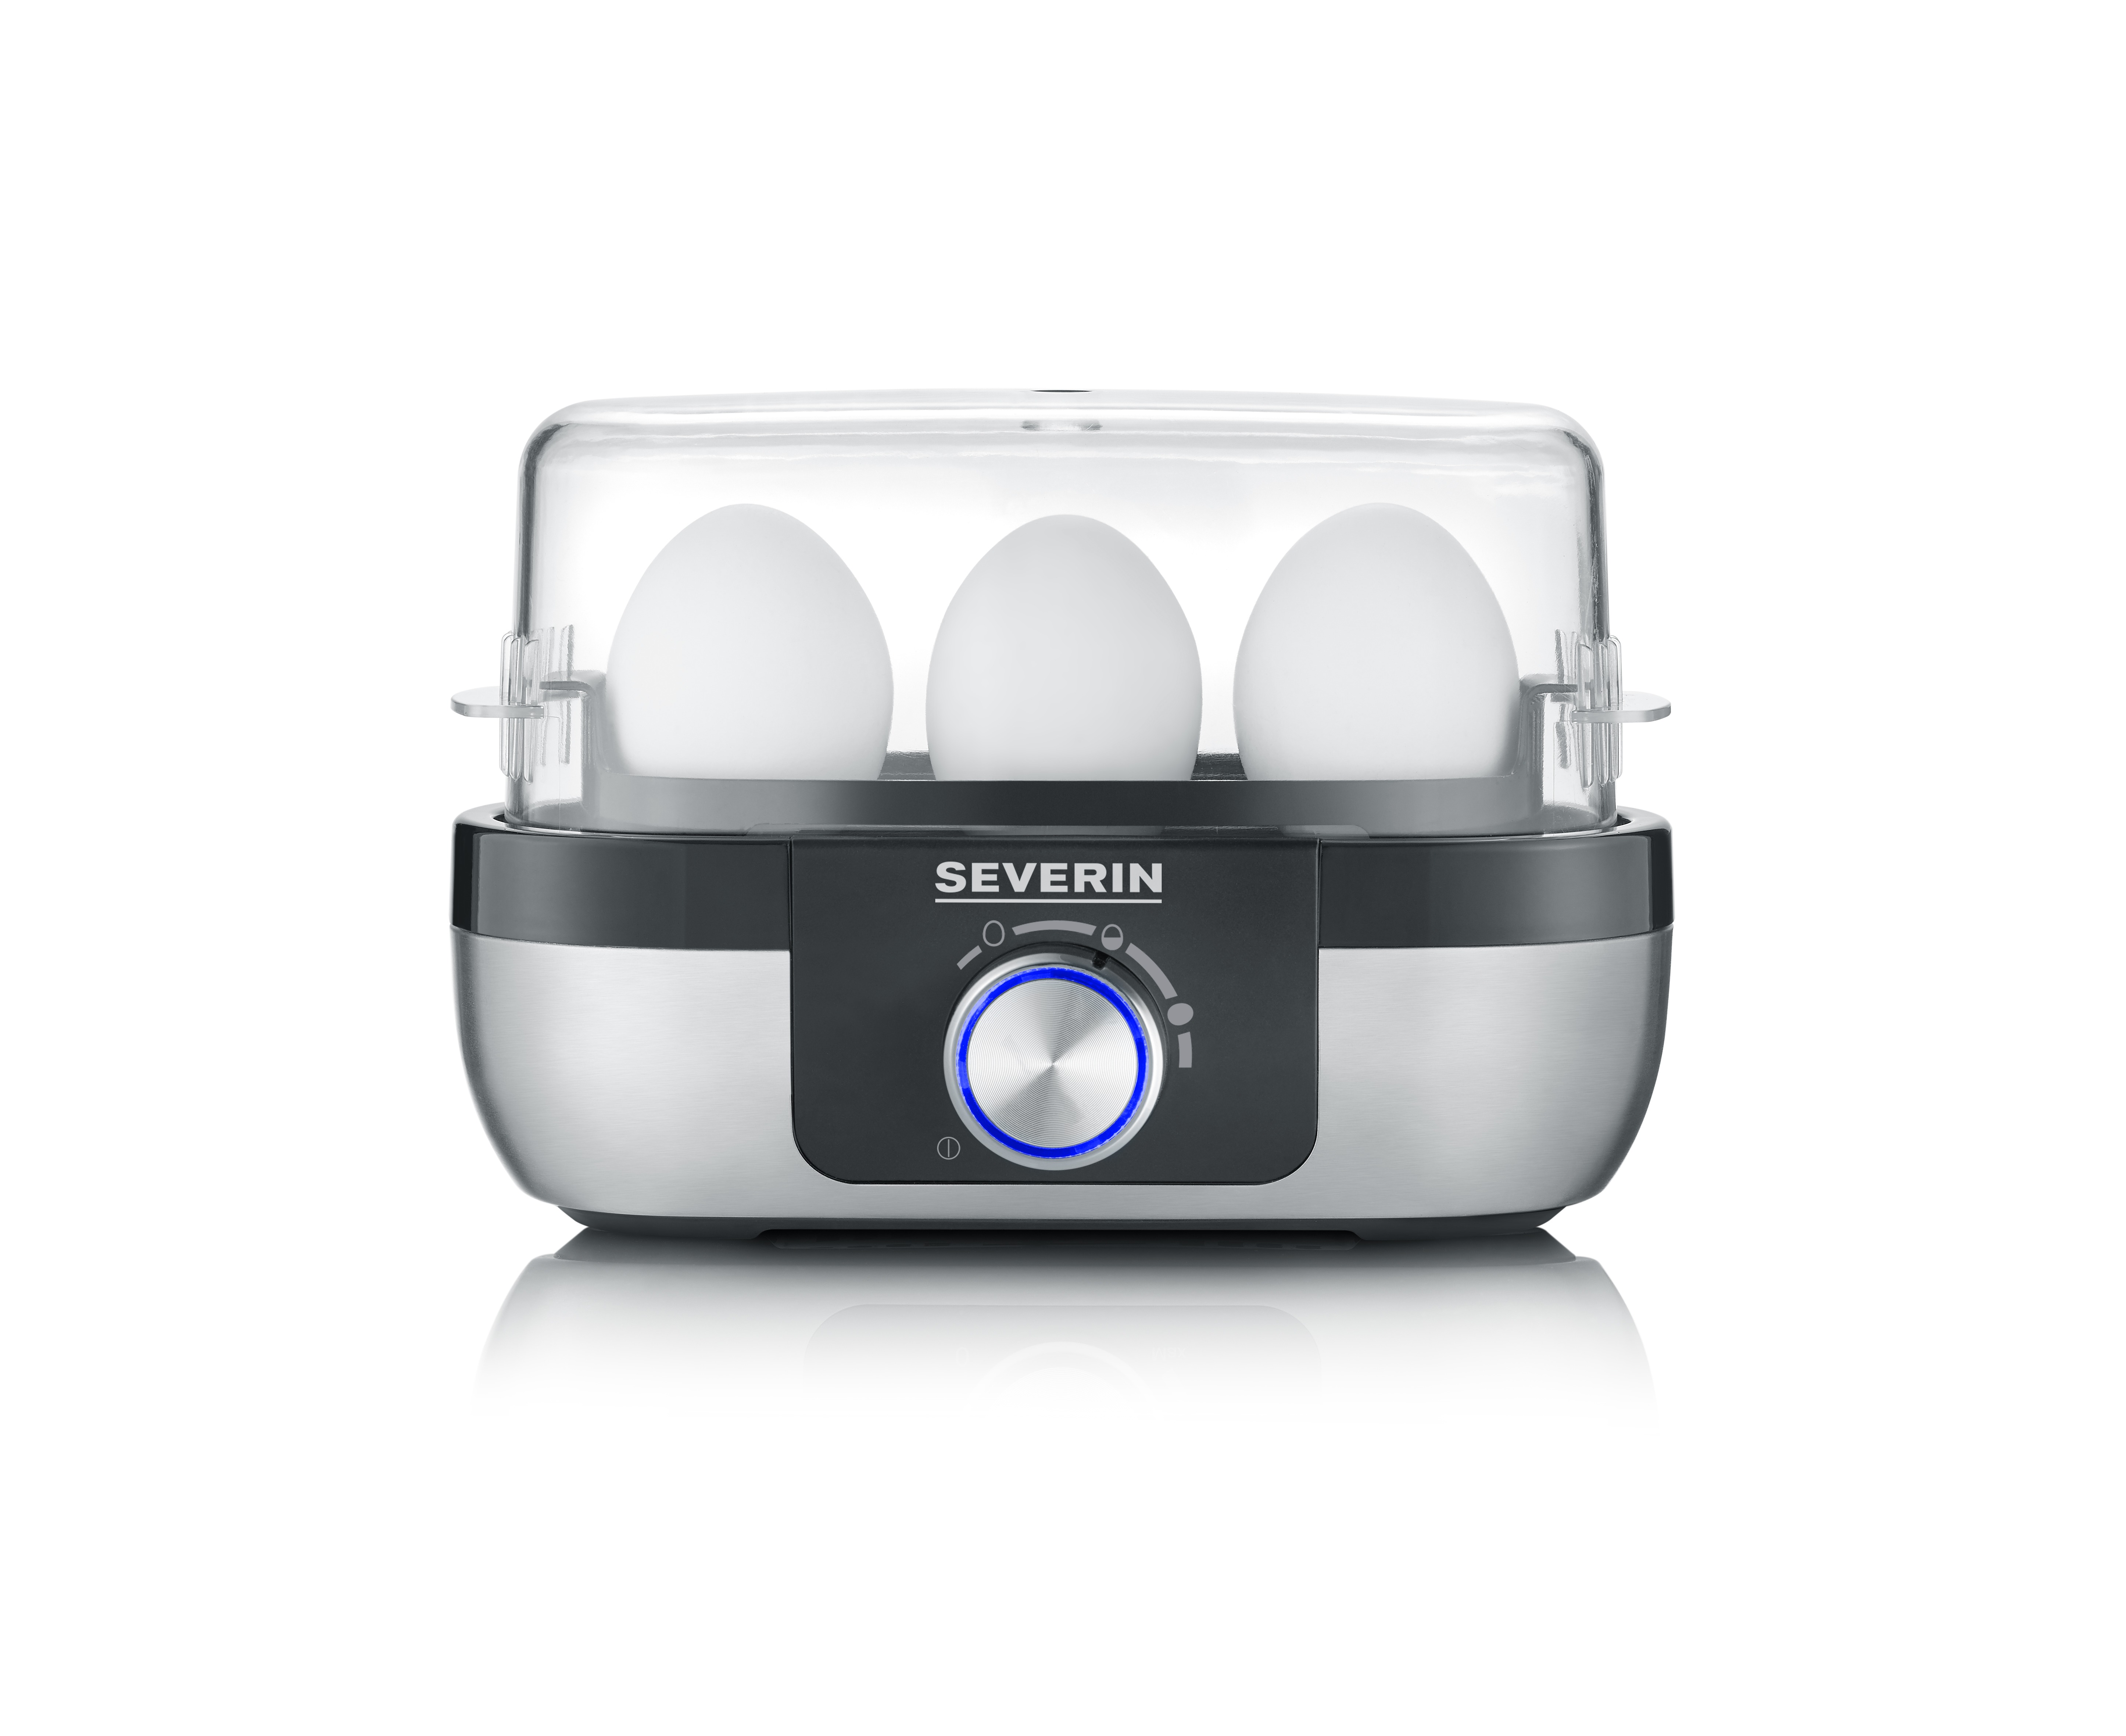 Severin Ek 3163 Eierkoker Voor 3 Eieren Rvs Met Zwart online kopen